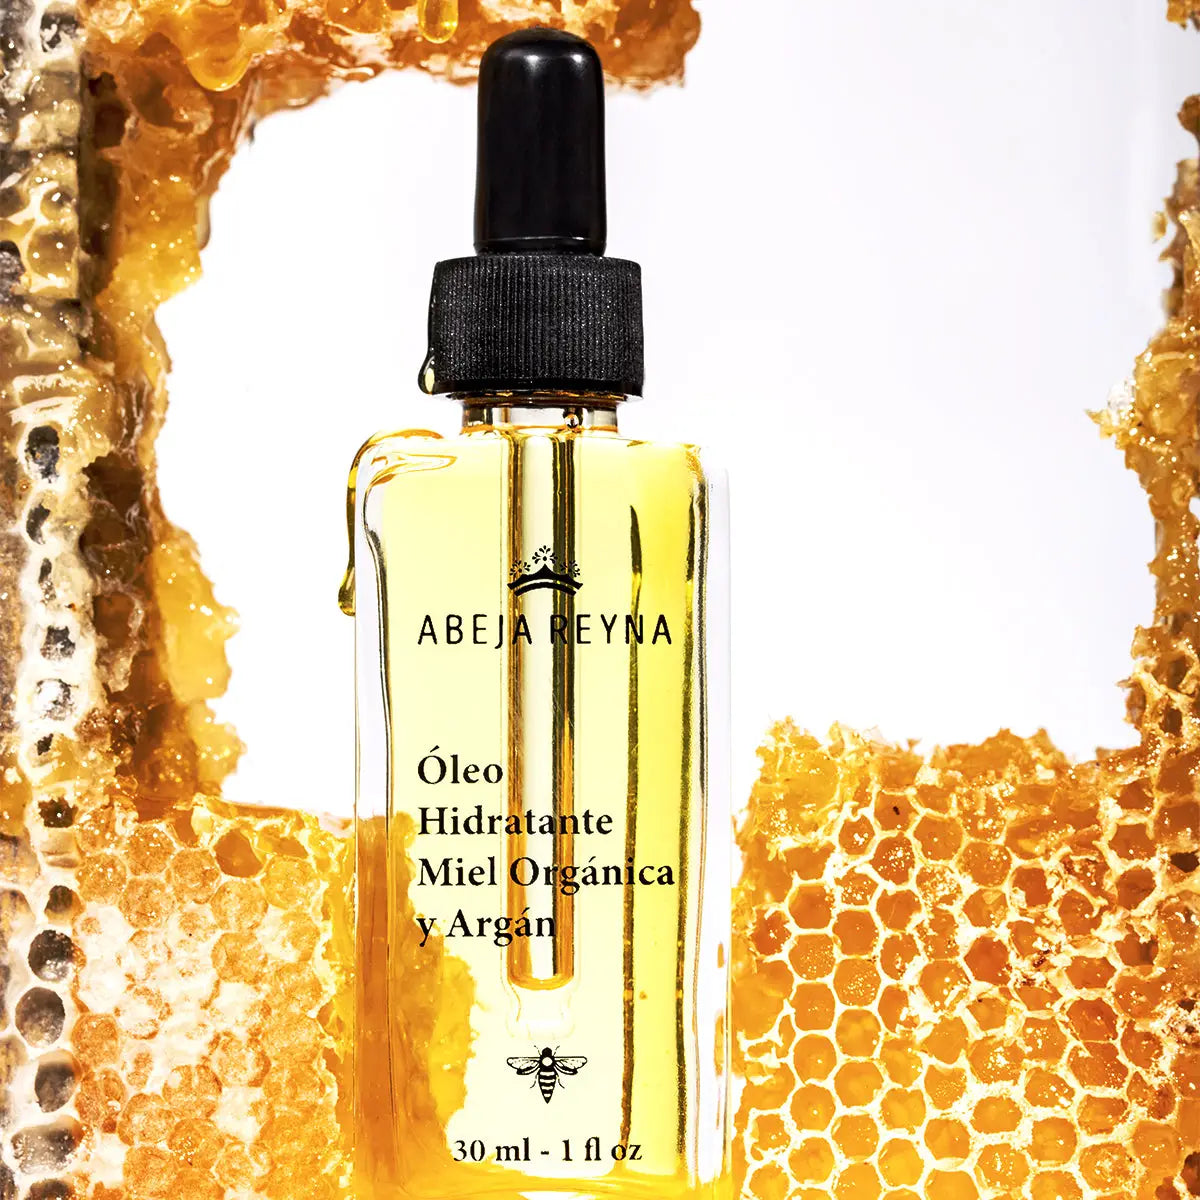 Nutre tu cabello con los beneficios de la miel orgánica: Abeja Reyna lanza Nuevo Óleo Hidratante con miel orgánica y argan.